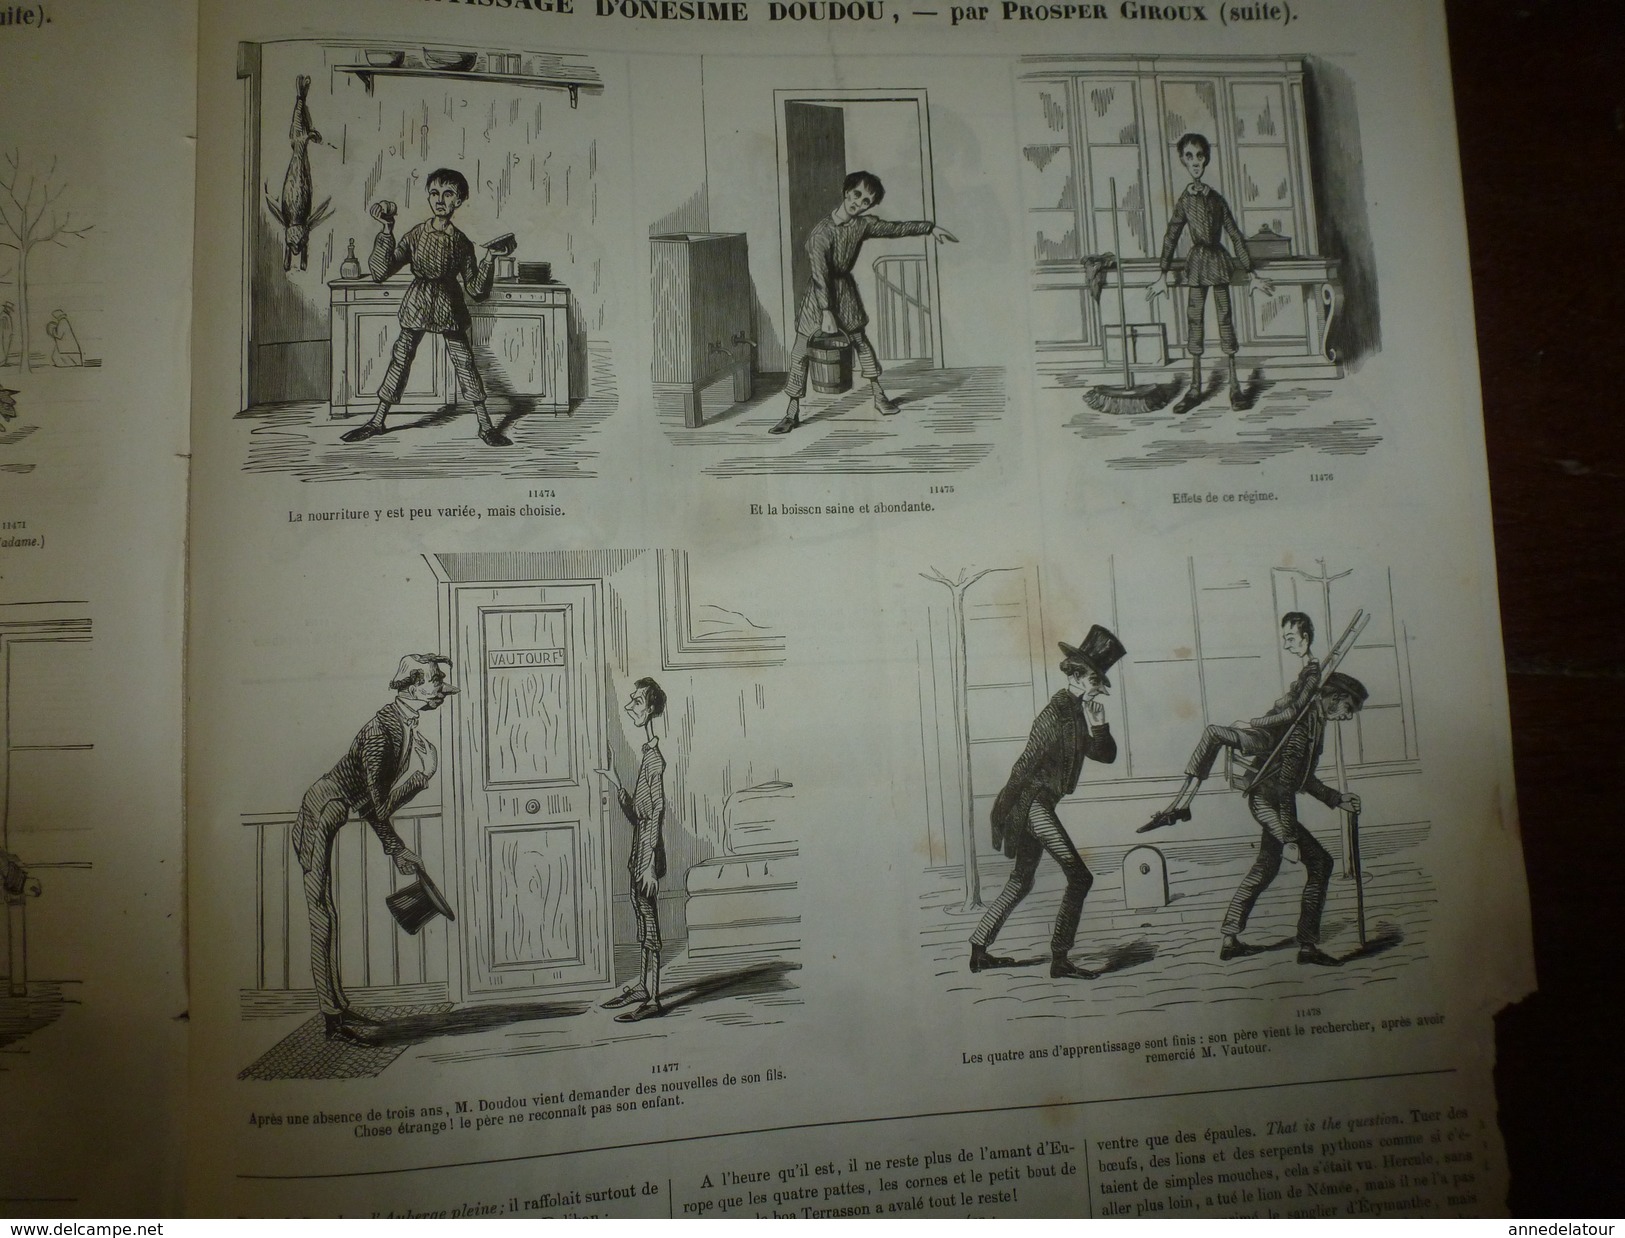 1855 Gravures  du Journal pour Rire: Nos braves troupiers;L'apprenti DOUDOU;Prodigue et prodige;Hiéroglyphes;etc